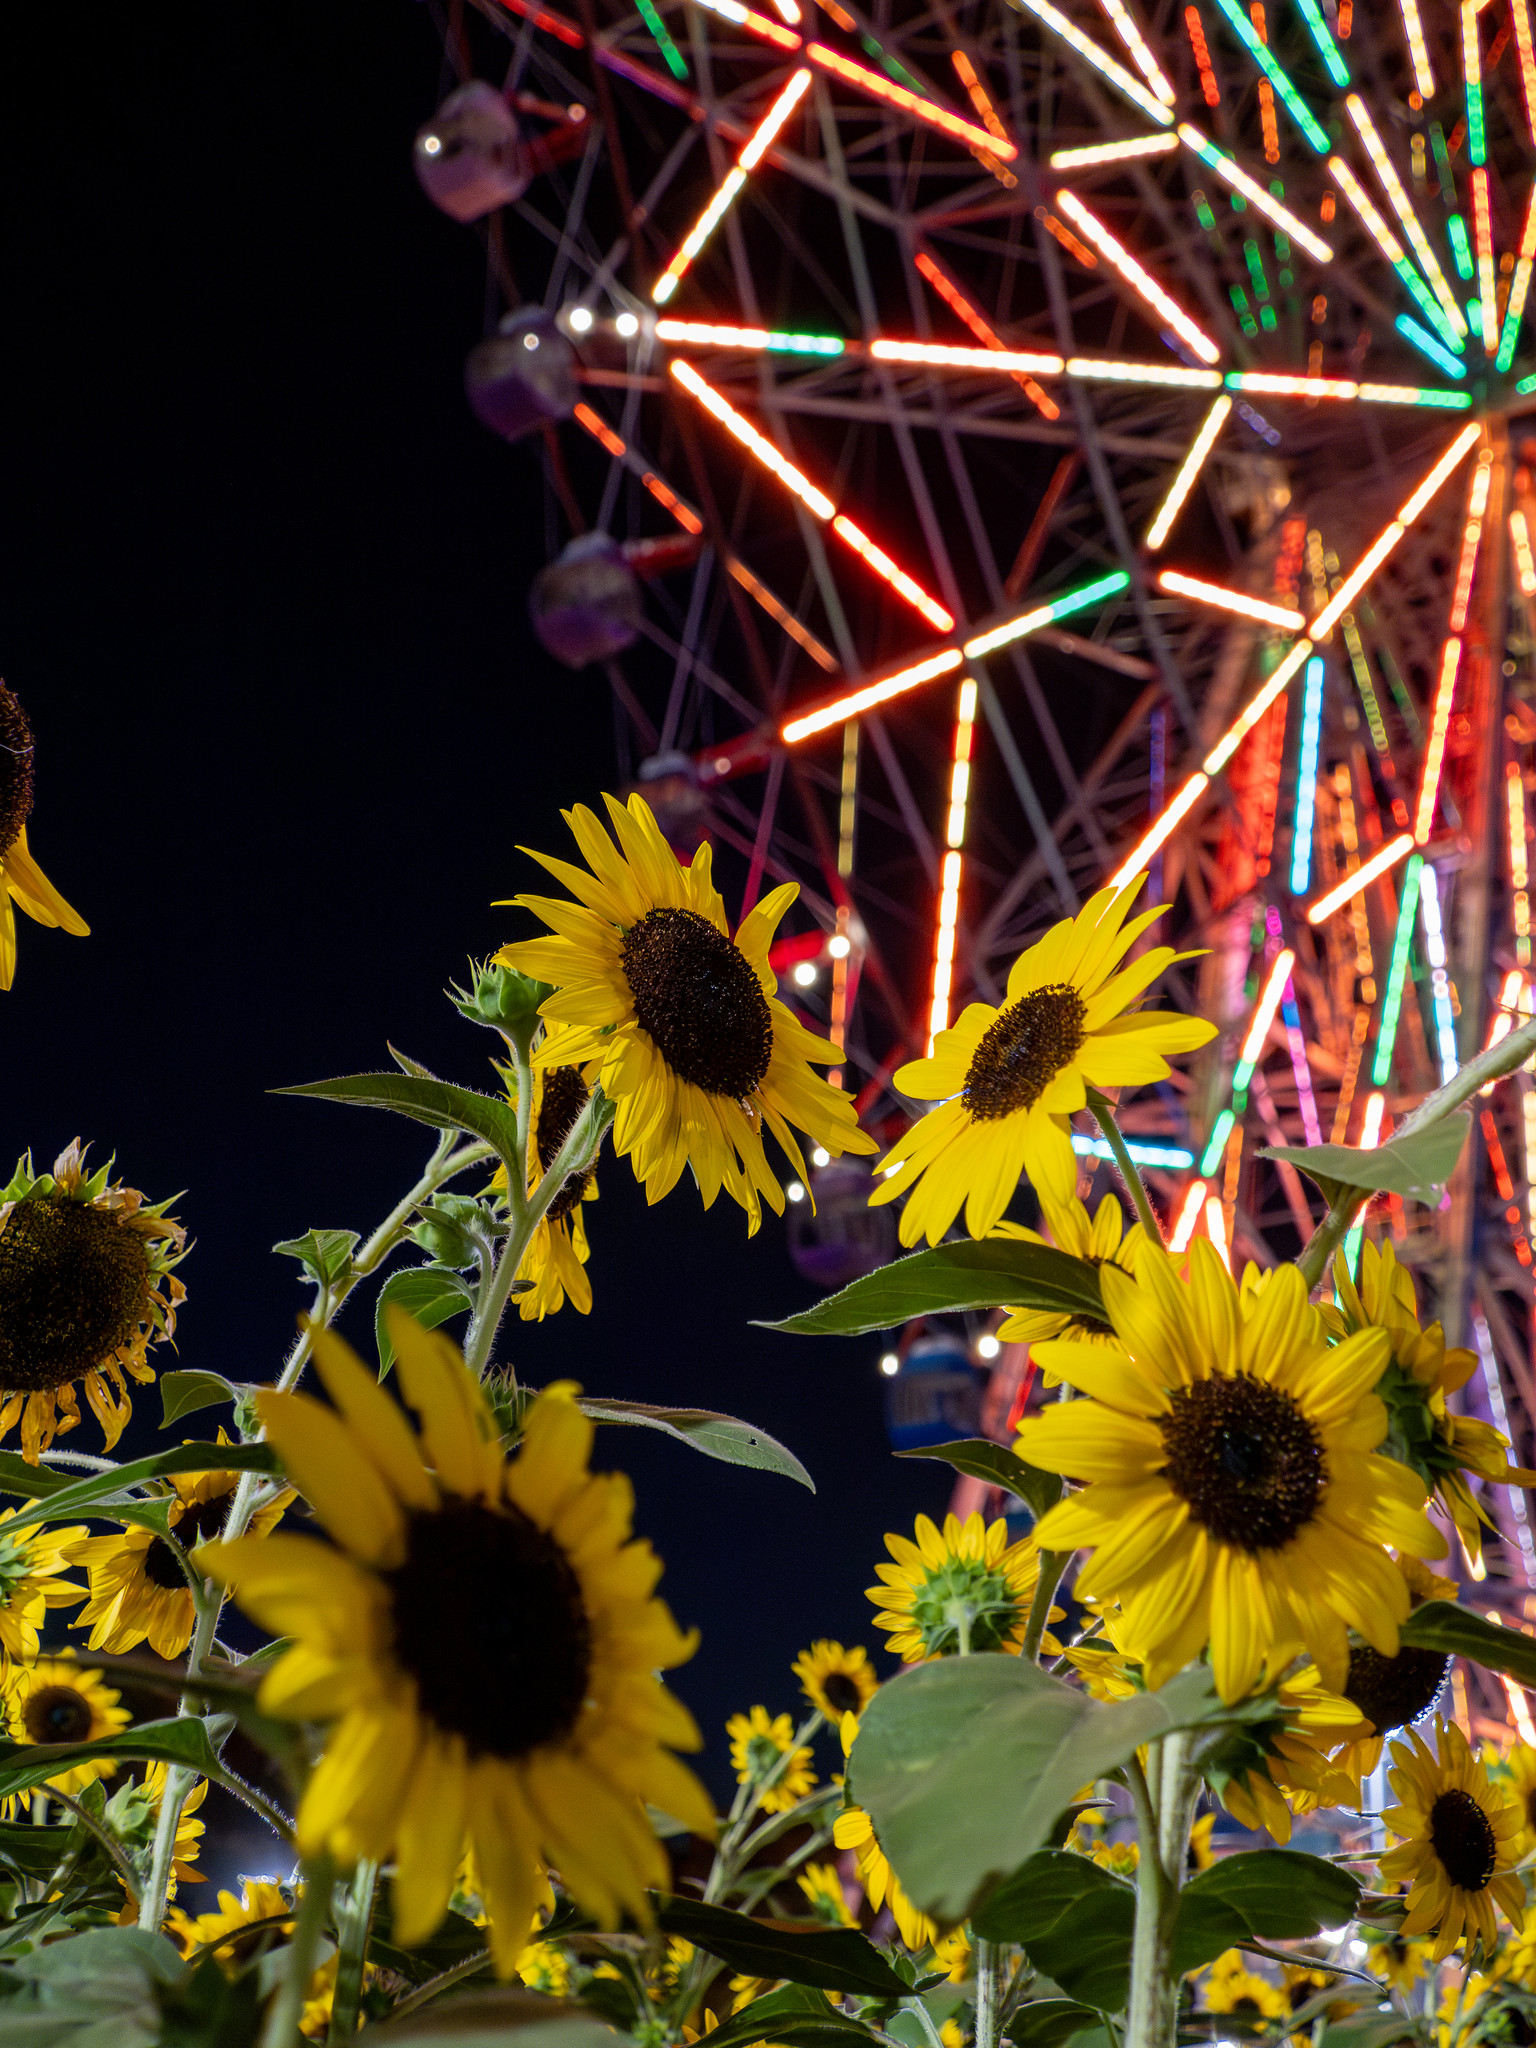 #葛西臨海公園 #花と光のムーブメント 夜のひまわりライトアップと大観覧車 #ひまわり